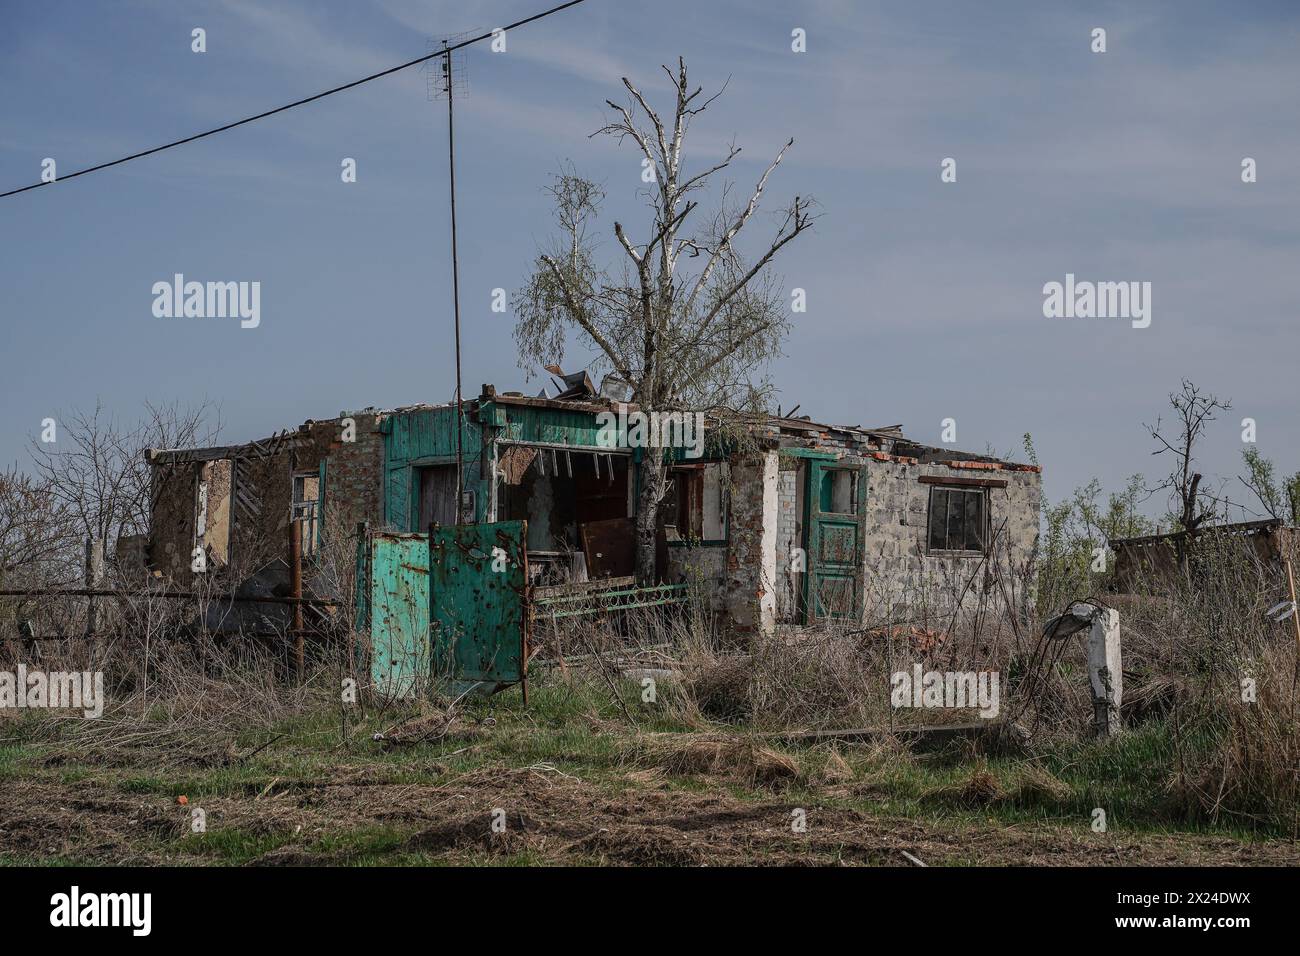 Yevhen Vasyliev/le Pictorium - HRAKOVE, RÉGION DE KHARKIV - 12/04/2024 - Ukraine/oblast de kharkiv/Hrakove - du 25 février au 7 septembre 2022, le village a été occupé par l'armée russe jusqu'à sa libération par les forces armées ukrainiennes. Le village a été lourdement endommagé car il était sur la ligne de front sous des bombardements constants pendant 195 jours, et les conséquences sont encore visibles 19 mois après la désoccupation. L'école, le bâtiment du conseil du village, l'église, les magasins, les immeubles privés et d'appartements - tout a été détruit. Une chambre de torture a été installée dans l'un des sous-sols d'an Banque D'Images